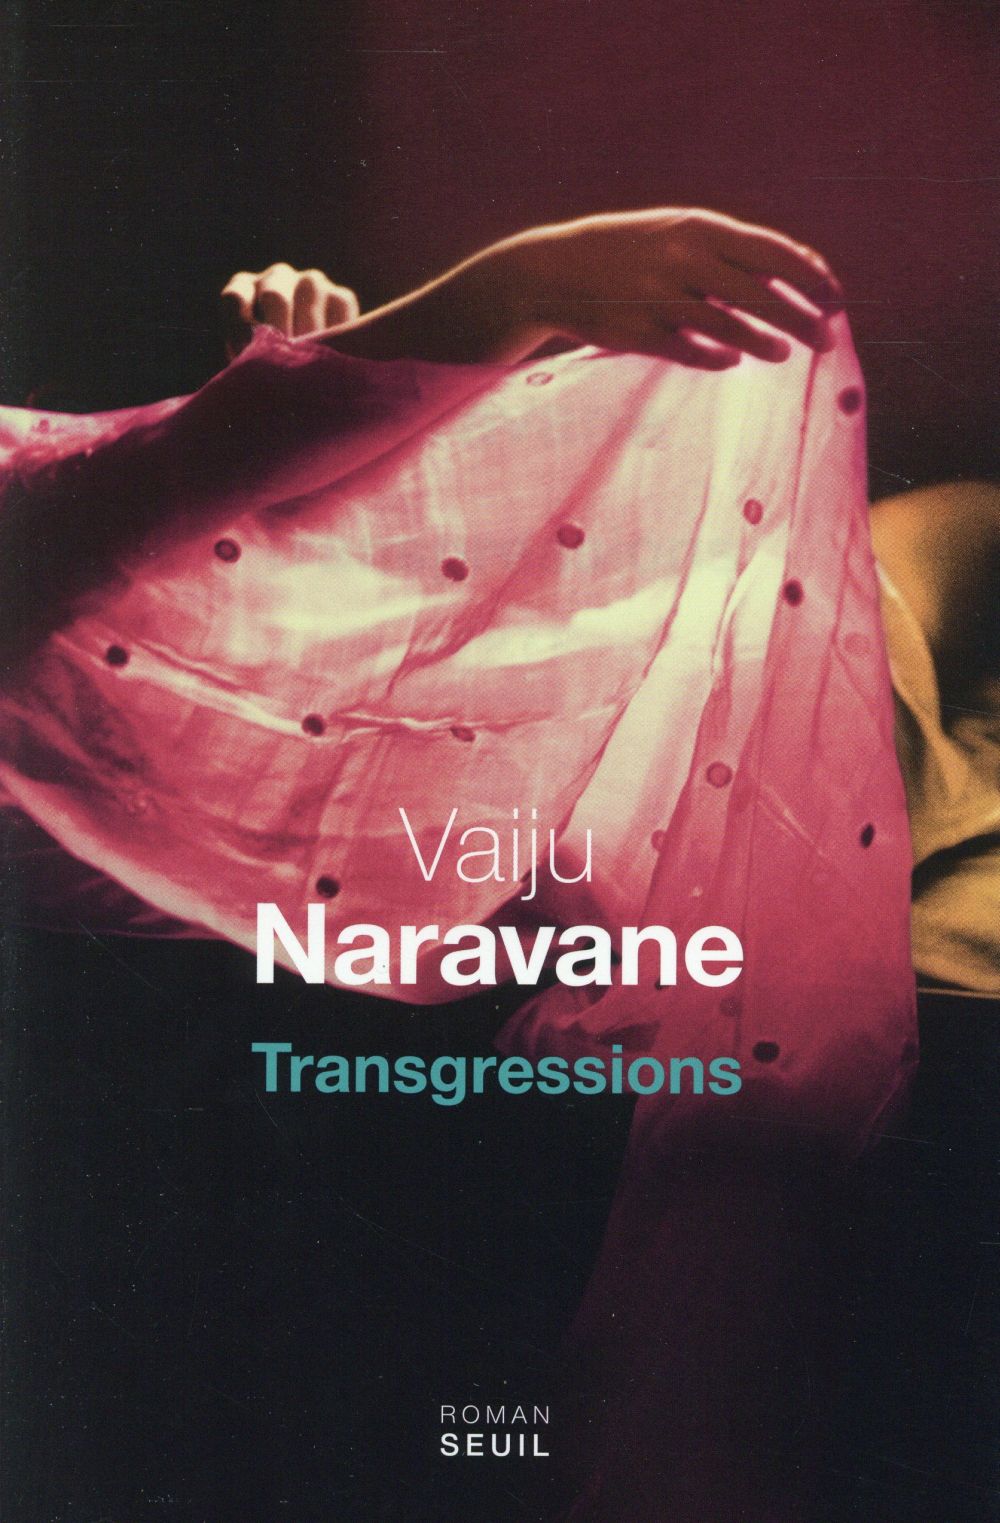 "Transgressions" de Vaiju Naravane - la chronique #26 du Club des Explorateurs